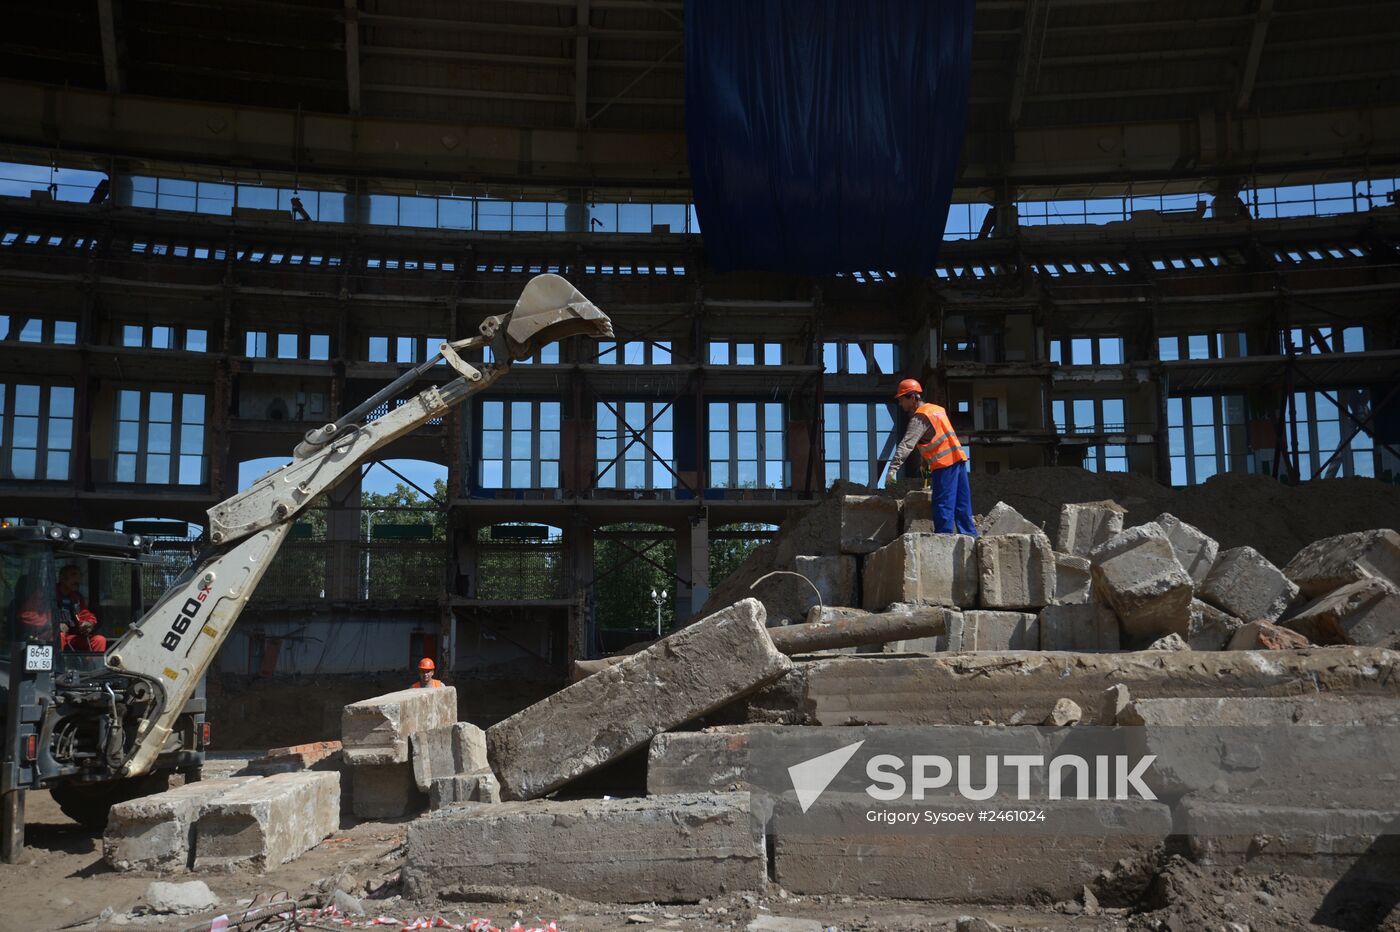 Reconstruction of Grand Sports Arena Luzhniki